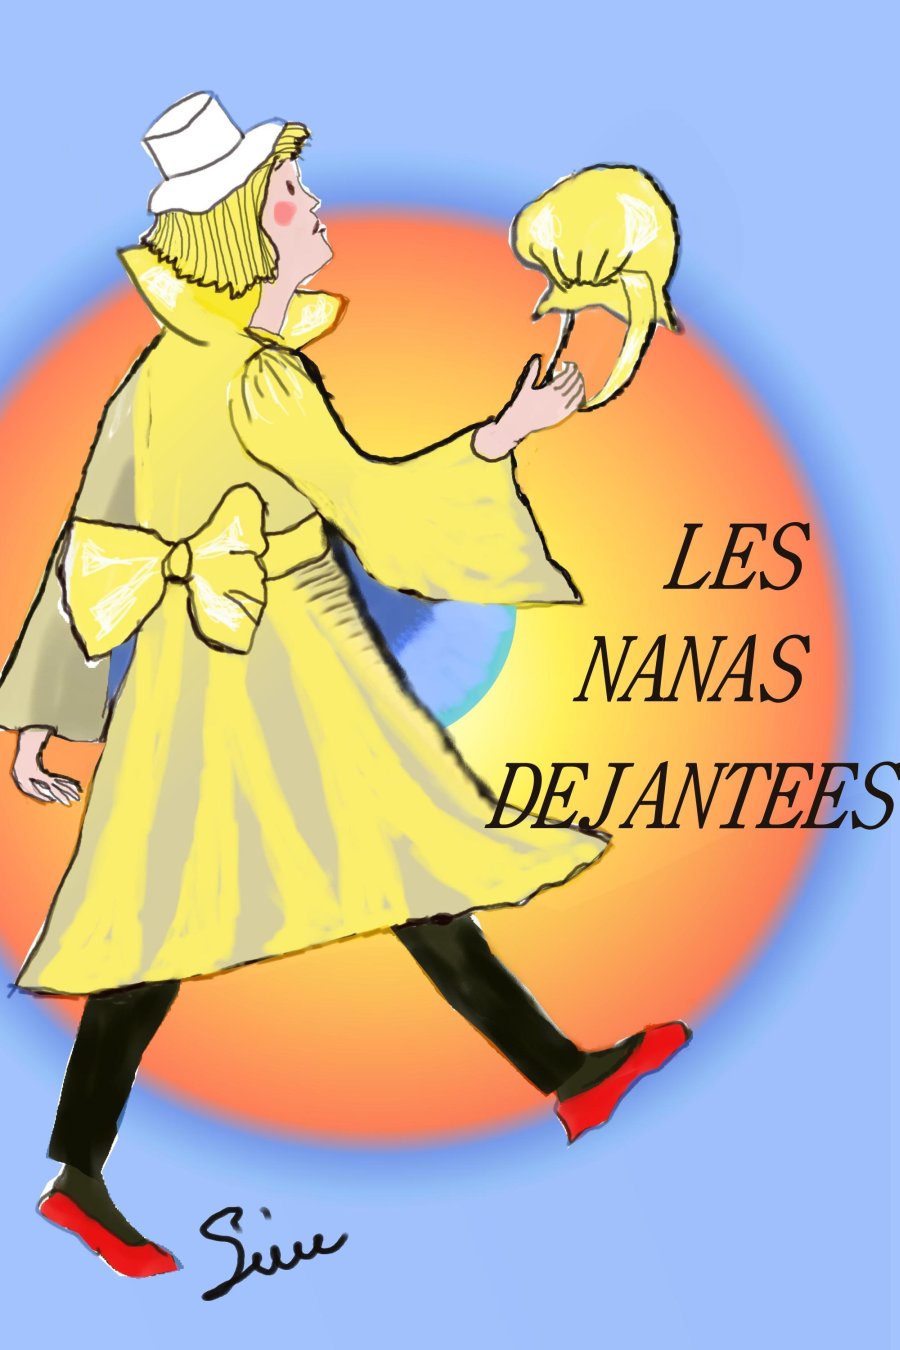 Scnario des Nanas djantes